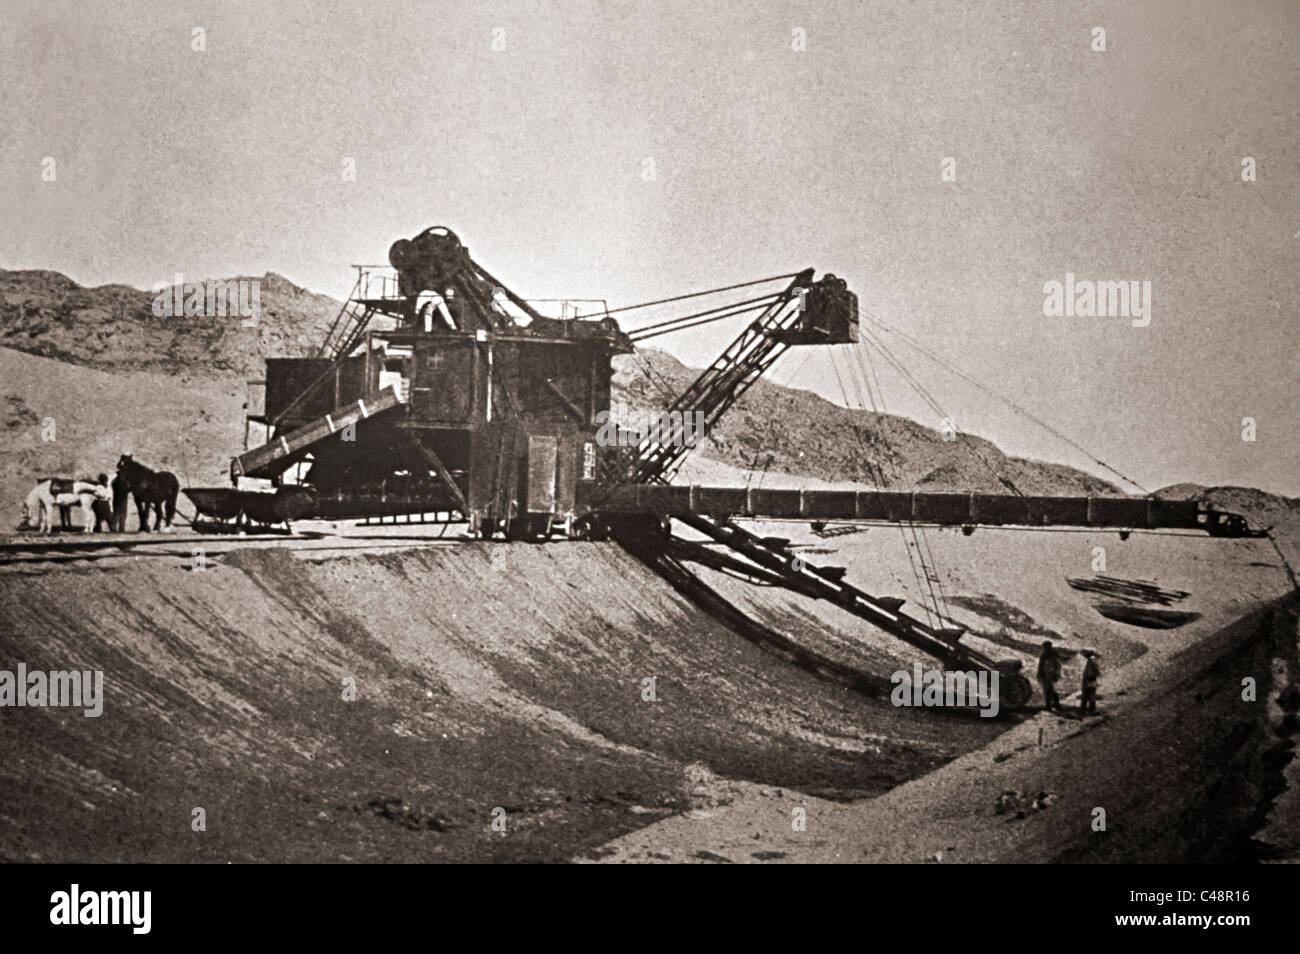 Les mines de diamant dans le désert de Namibie vers 1910 Banque D'Images